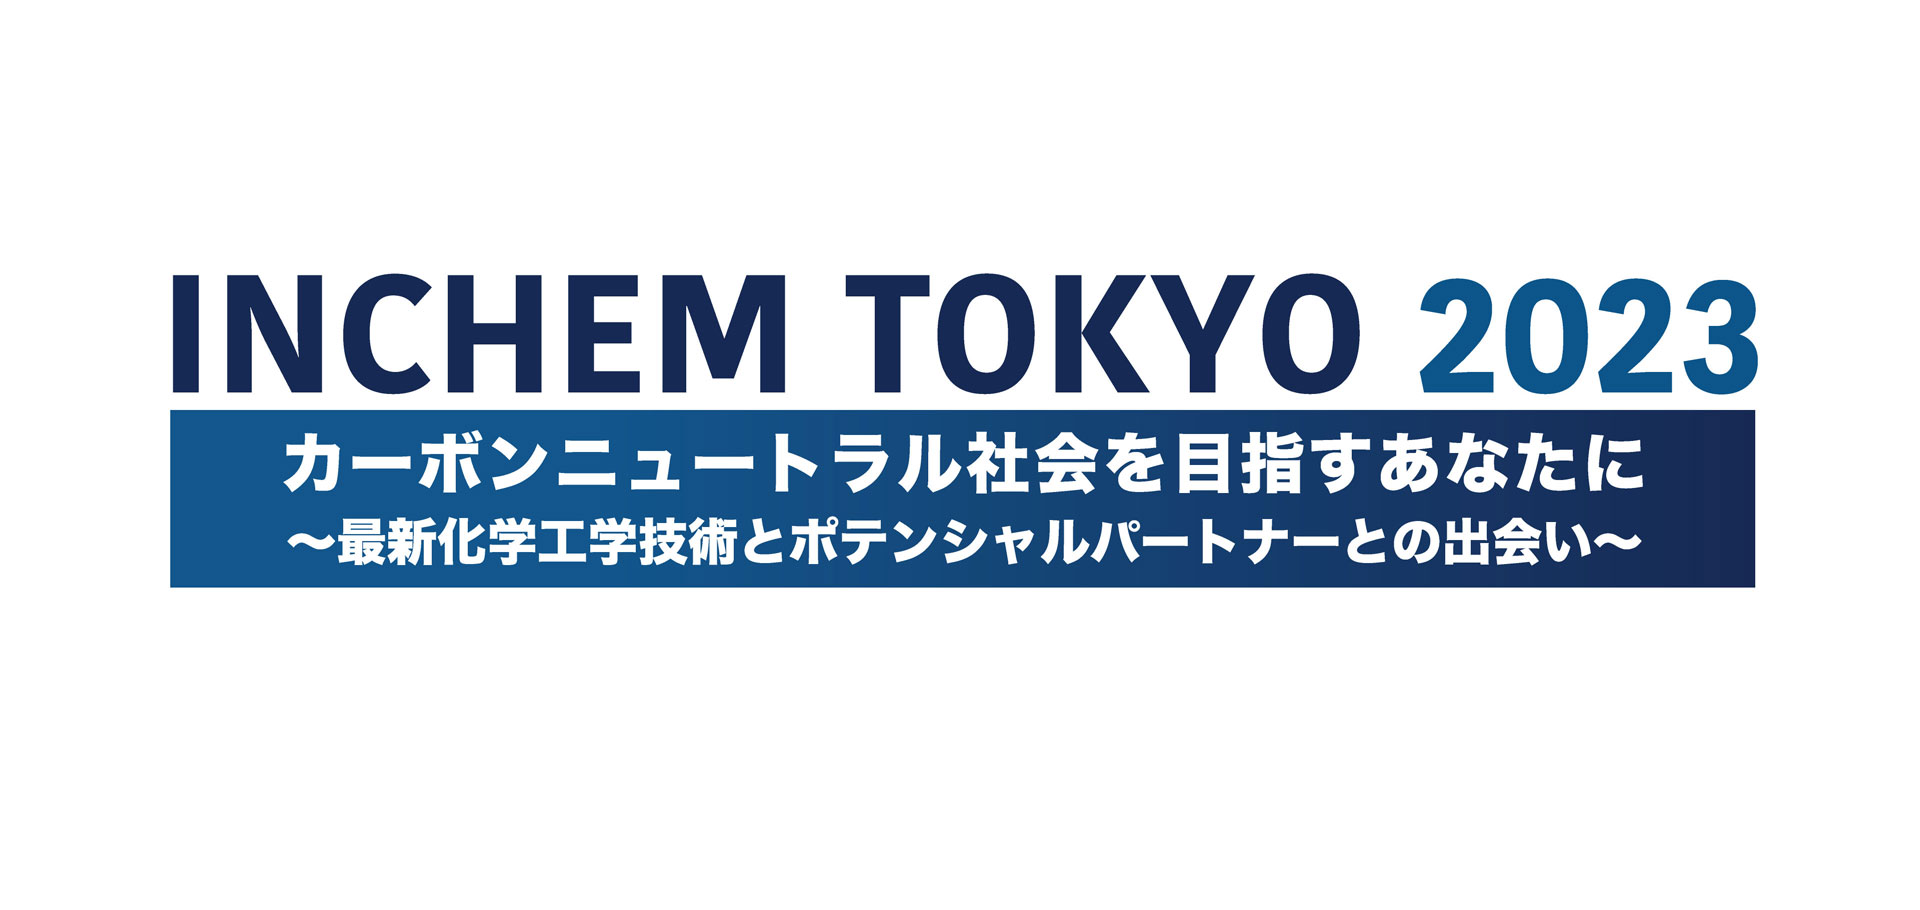 INCHEM TOKYO2023 カーボンニュートラル社会を目指すあなたに 最新化学工学技術とポテンシャルパートナーとの出会い